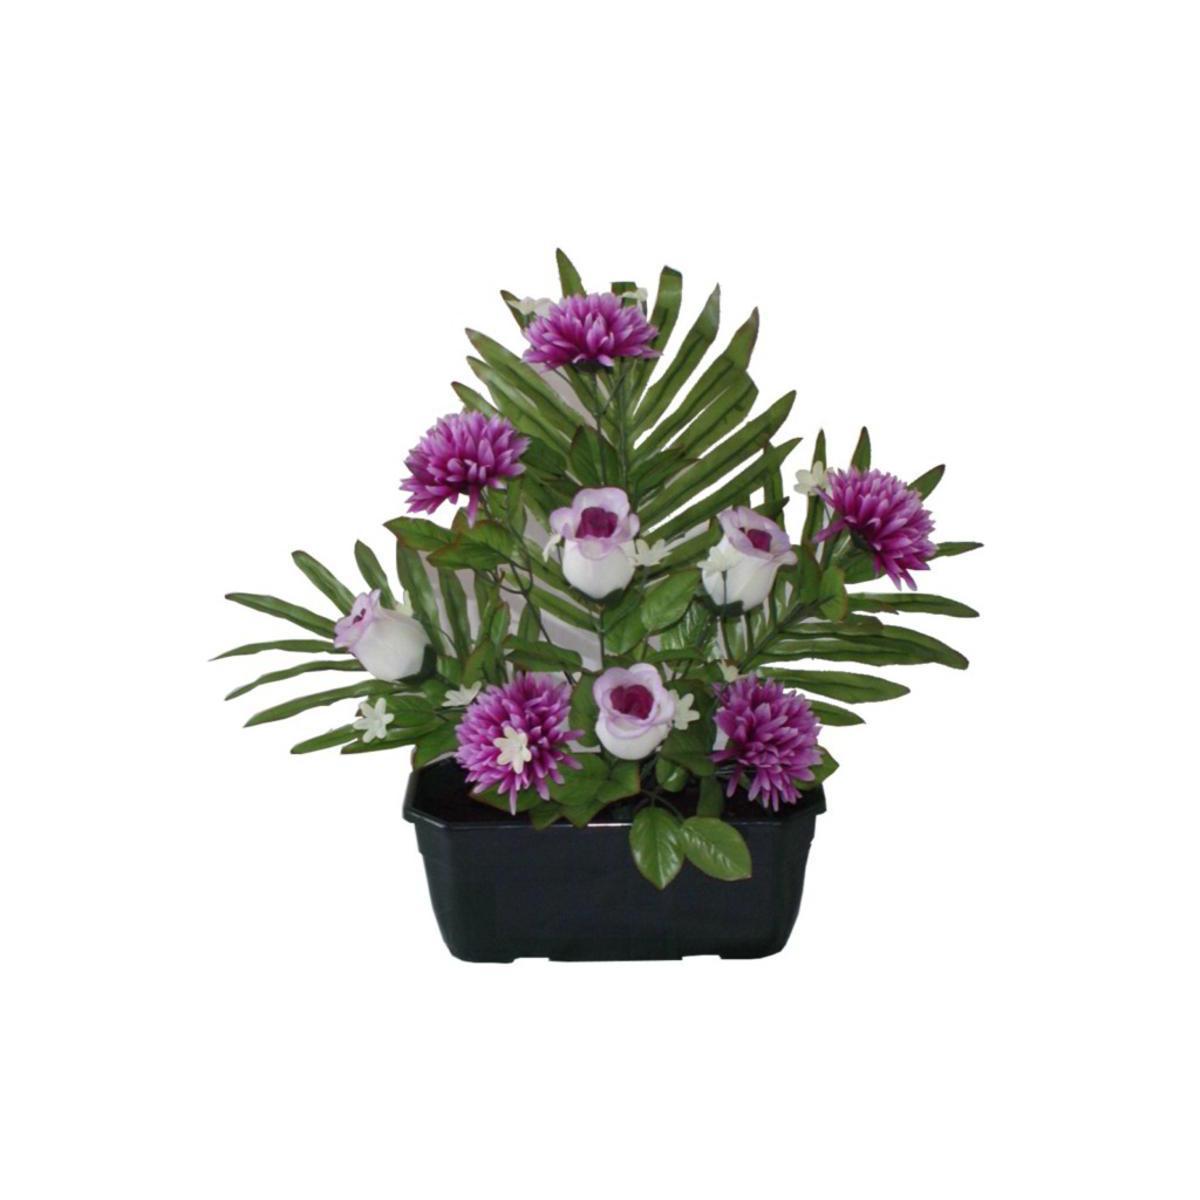 Jardinière de gerbes de roses, chrysanthèmes et palmier - Polyester - H 40 cm - Violet